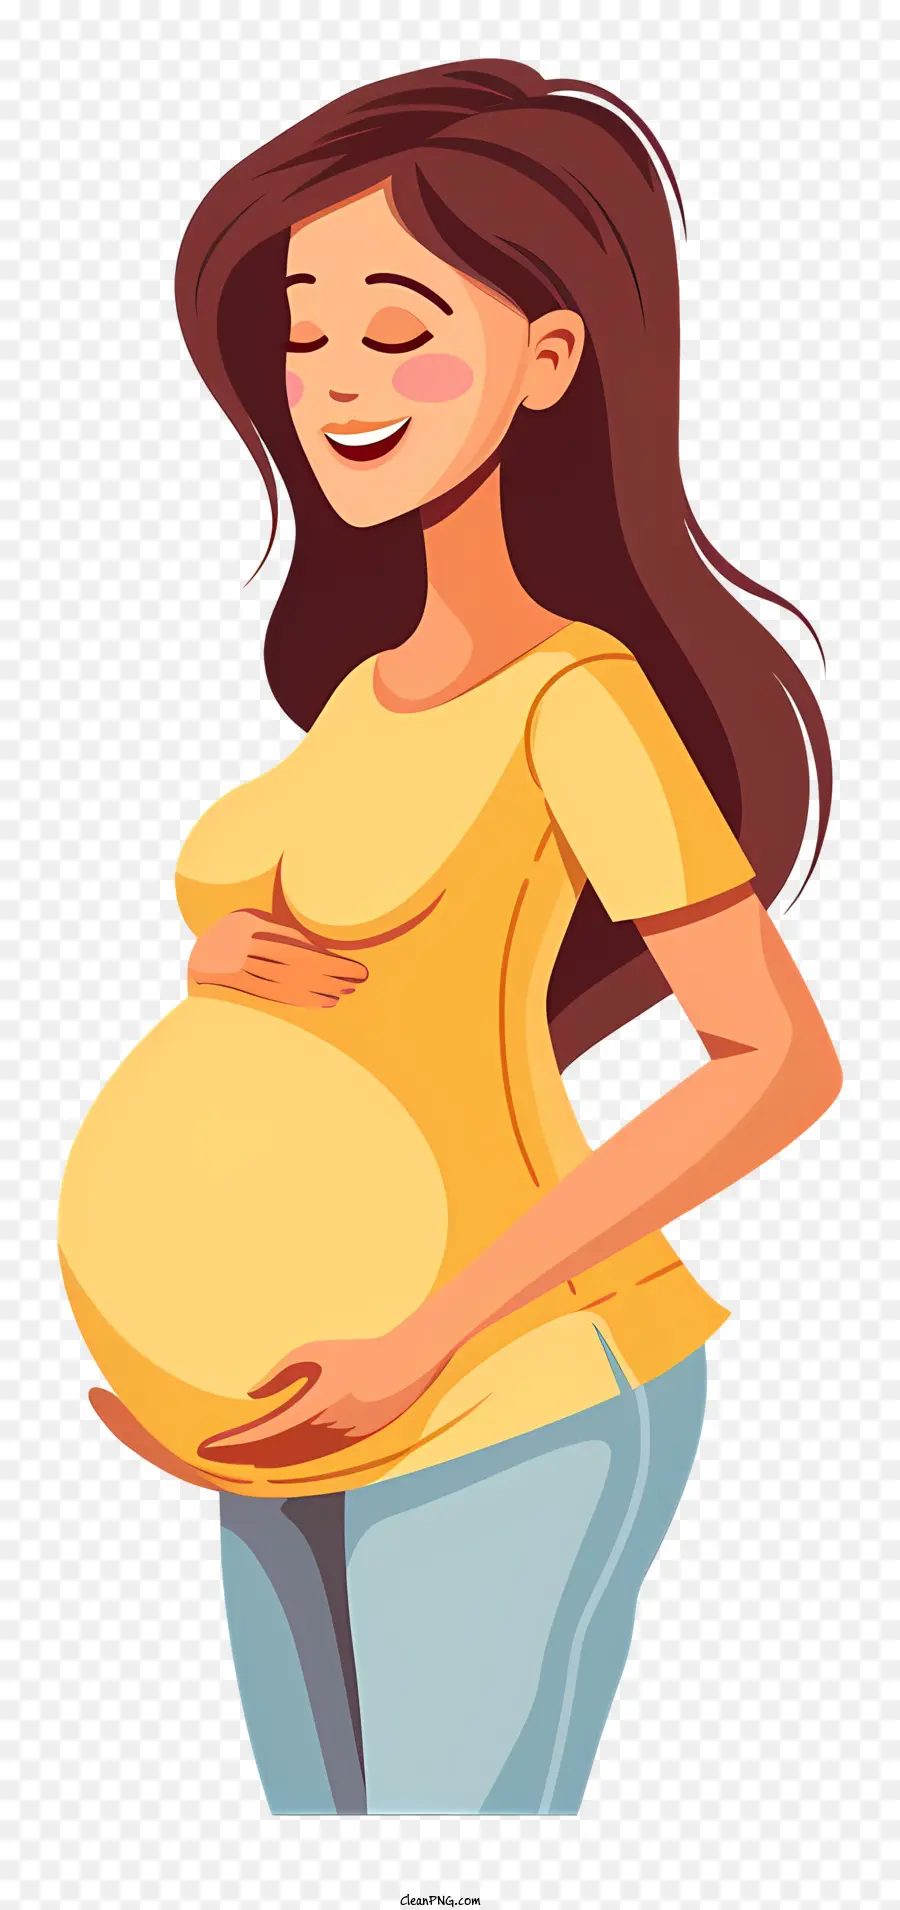 Schwangere Frau Cartoon Schwangerschaft erwartungsvolle Mutter mitten in der Schwangerschaft Mutterschaft - Schwangere Frau in der Mitte der Schwangerschaft, erwartungsvoller Ausdruck